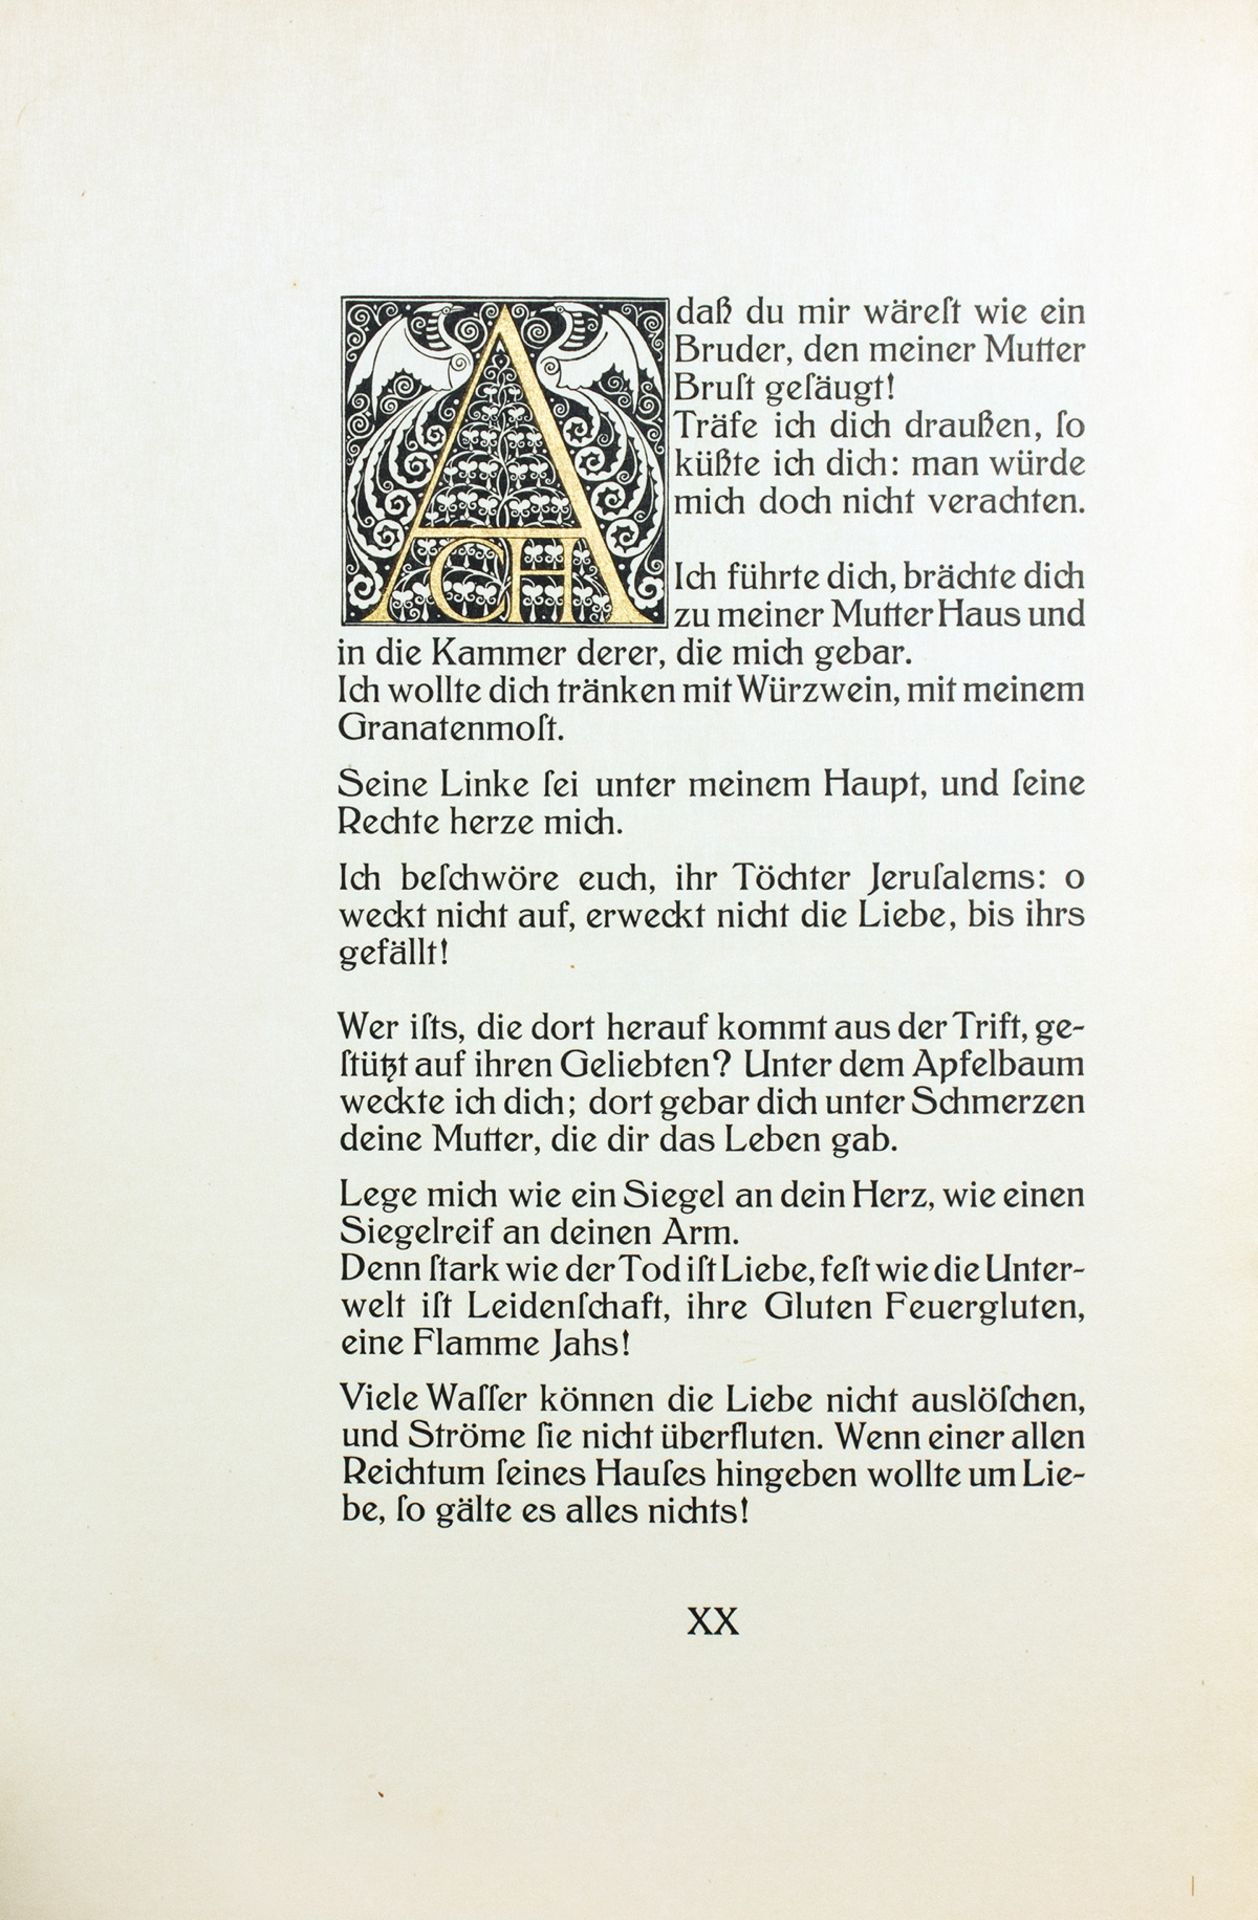 Ernst Ludwig-Presse - Das Hohelied von Salomo. 1909 - Image 3 of 4